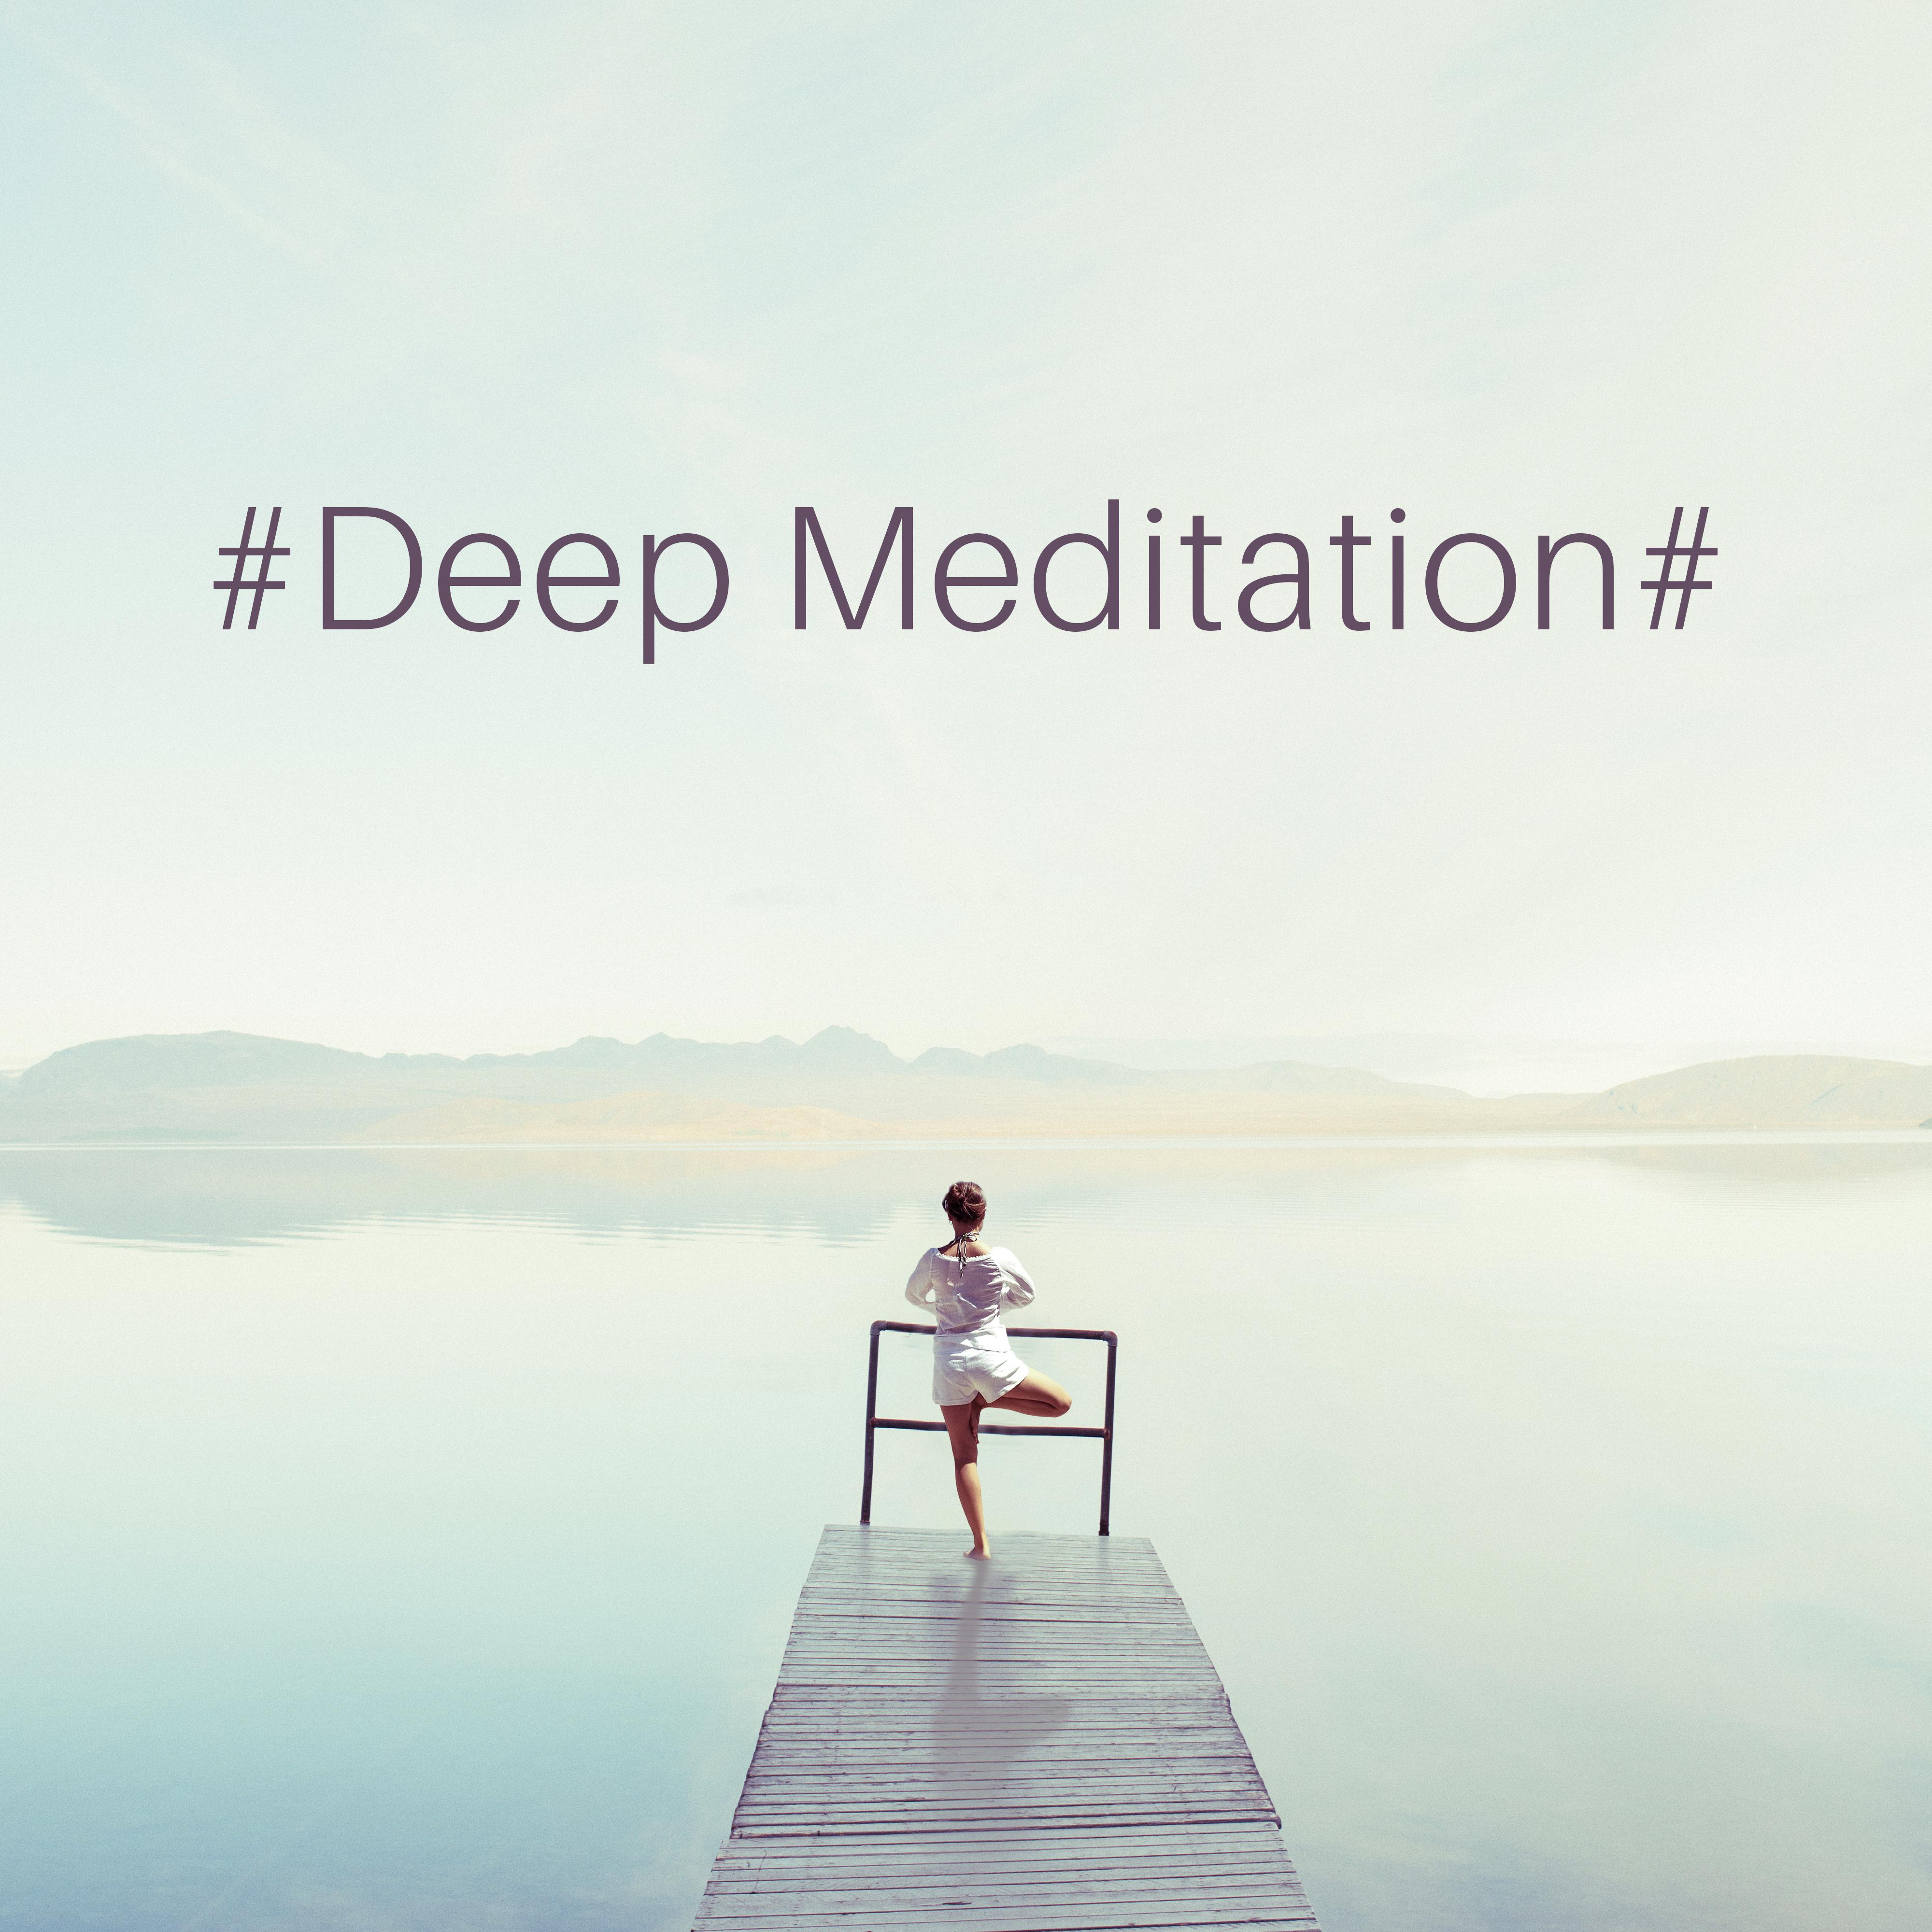 #Deep Meditation#